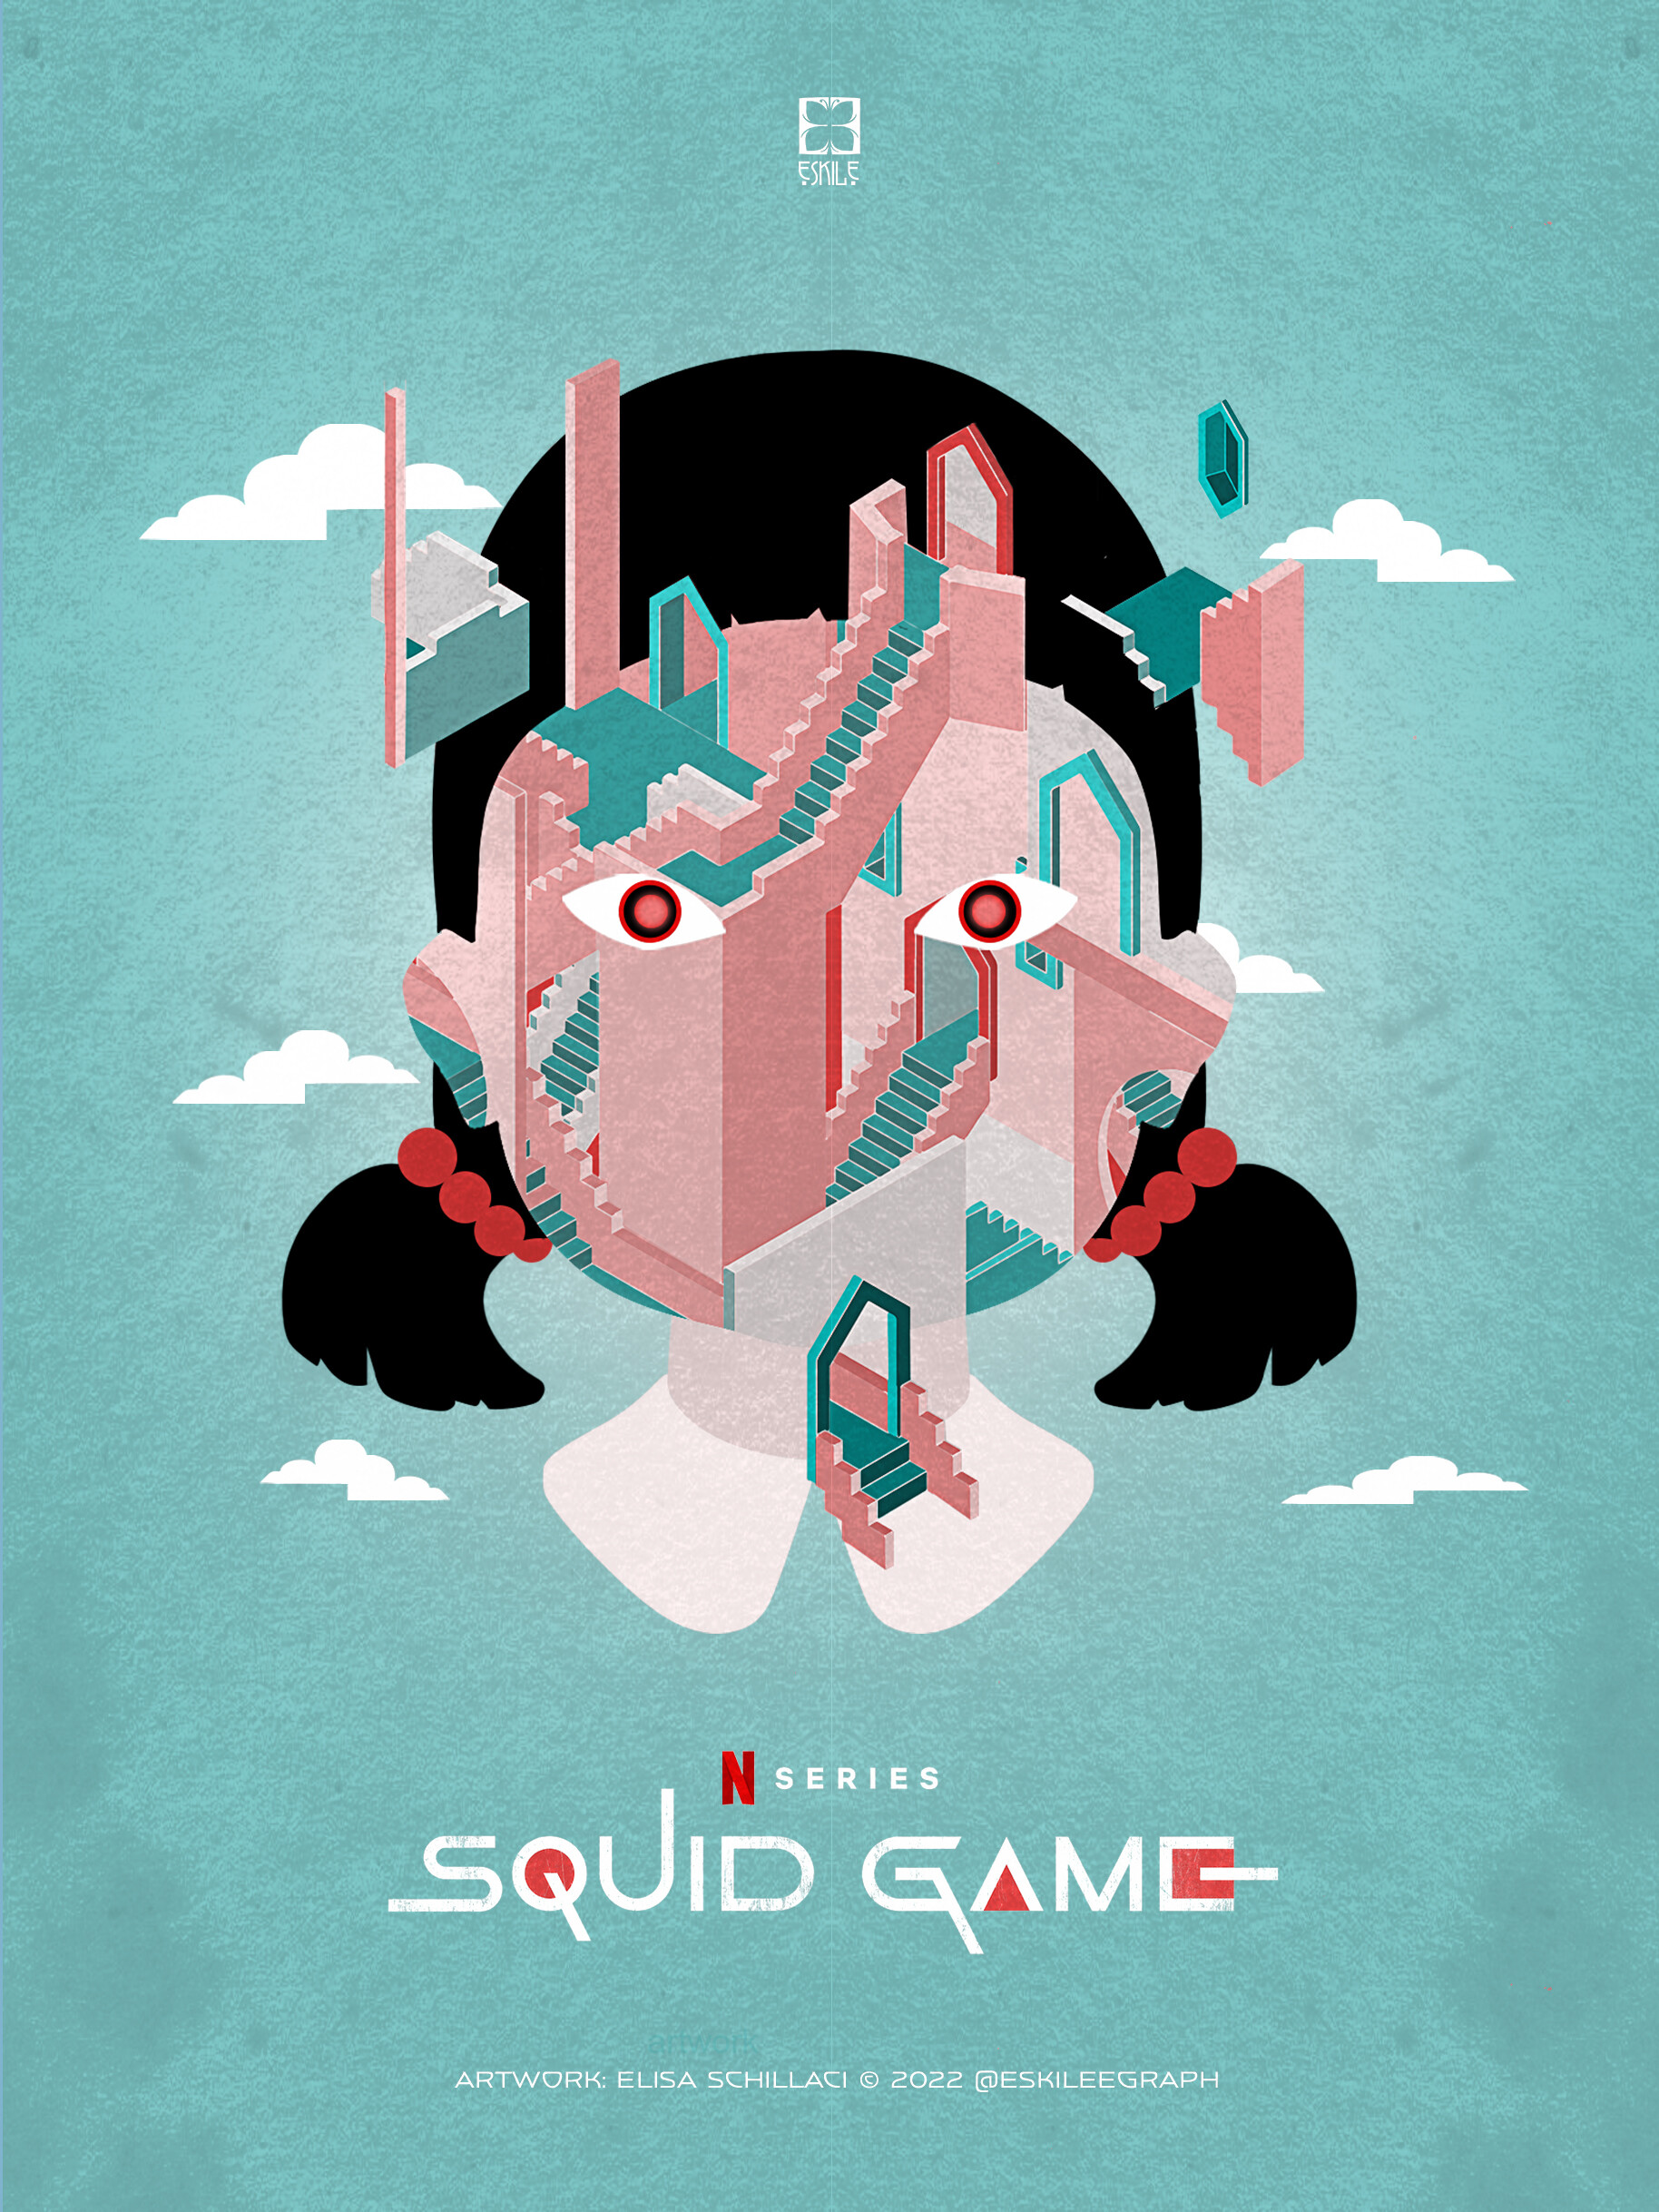 Squid Game Poster  Squid games, Squid, Poster design